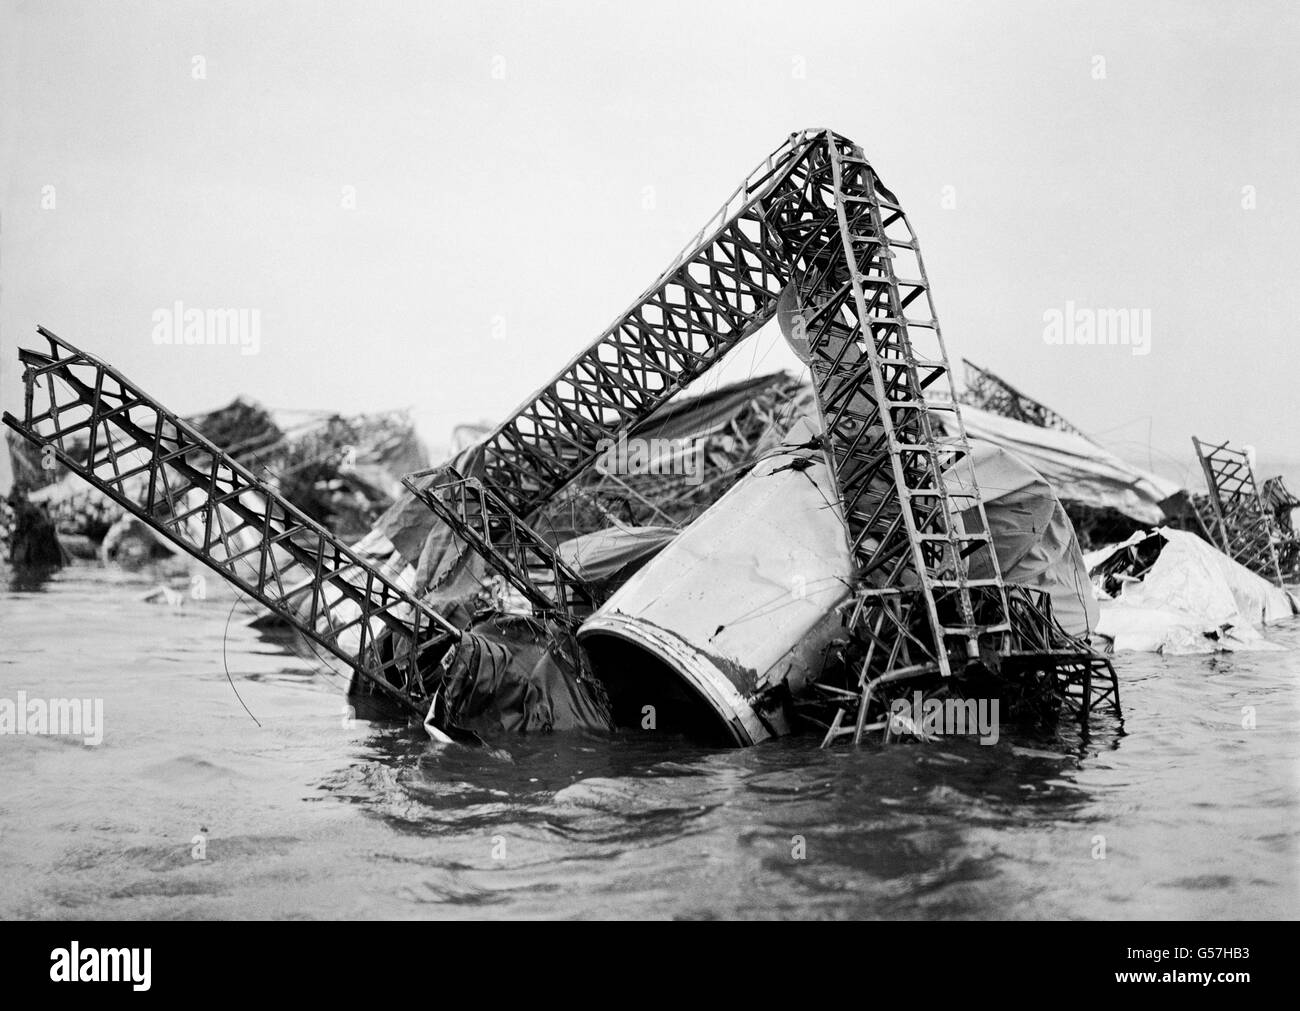 La scène de la catastrophe du navire. Masse de l'épave embâillée de la R38 (également connue sous le nom de ZRII) à voir à marée basse dans l'estuaire de Humber. 27 Britanniques et 16 Américains ont été tués lorsque le navire a explosé lors d'un vol d'essai au-dessus de Hull le 24 août 1921. Banque D'Images